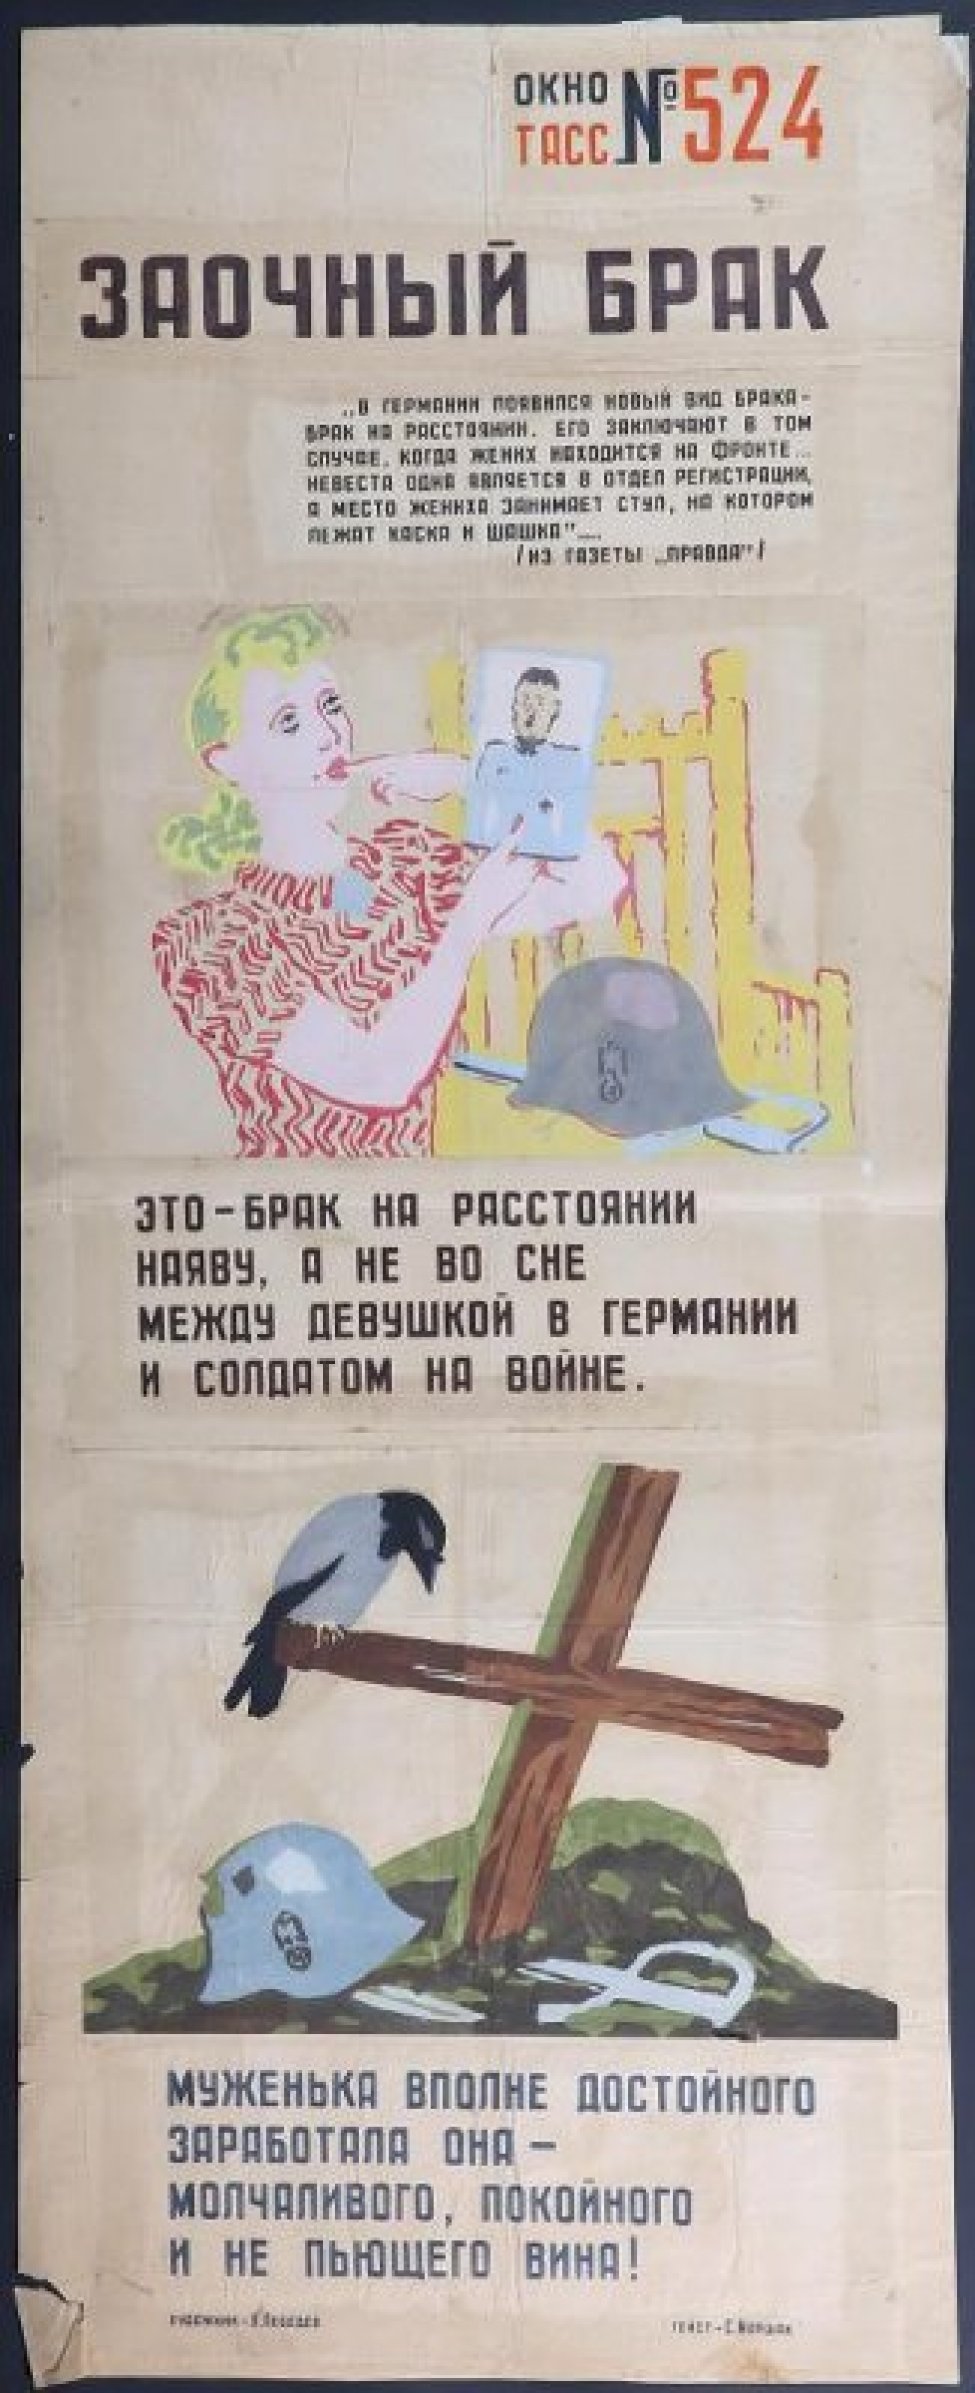 Помещено 2 изображения: 1). немецкая девушка с фотографией в руках, рядом каска и шпала;2). могила с крестом на котором сидит ворон, на могиле - фашистская каска.